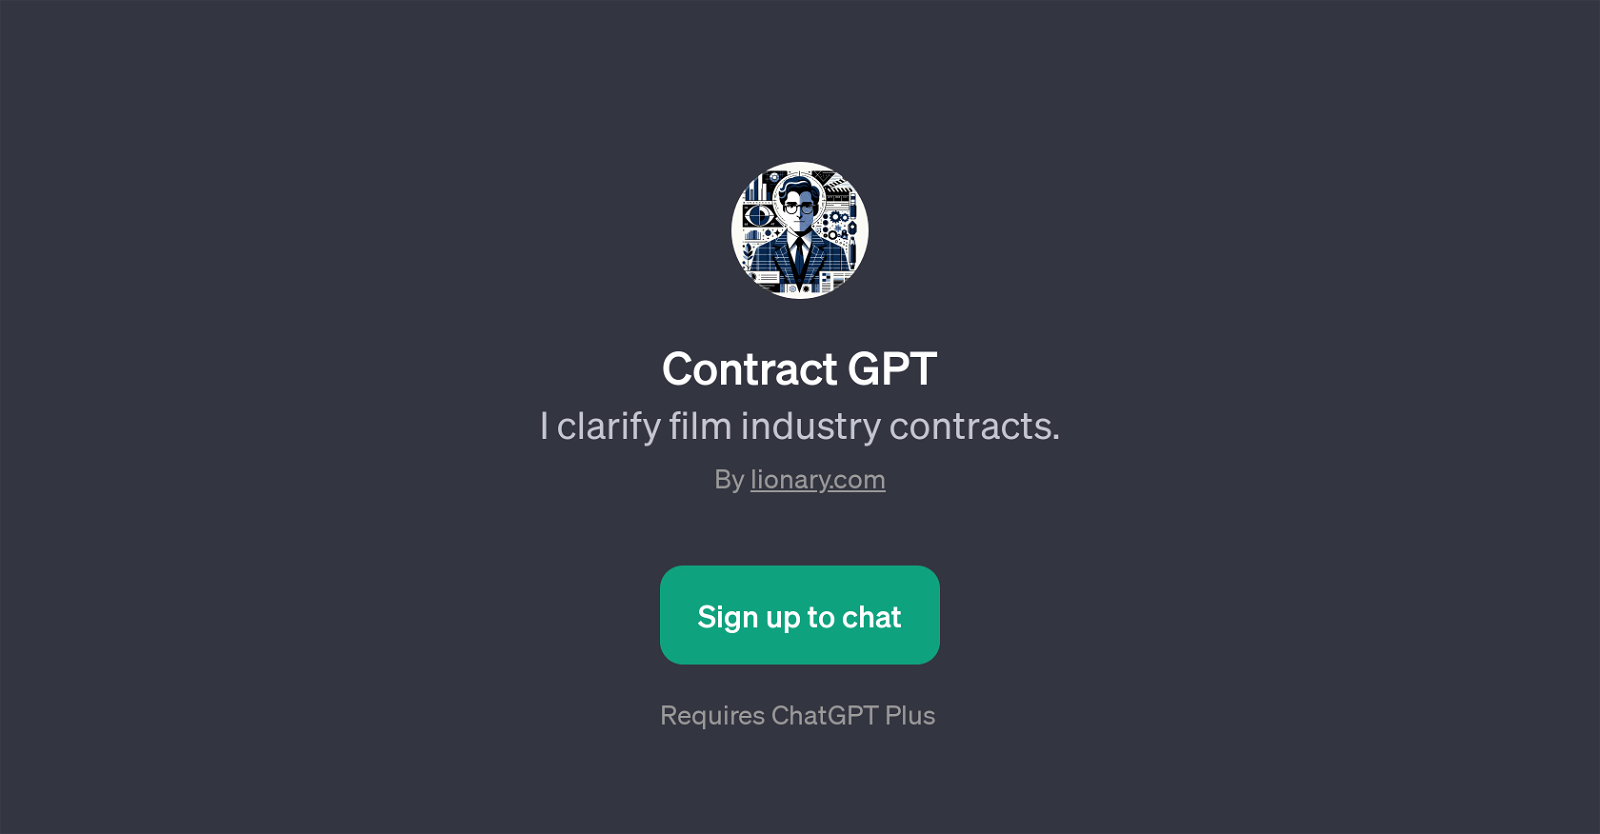 Contract GPT website